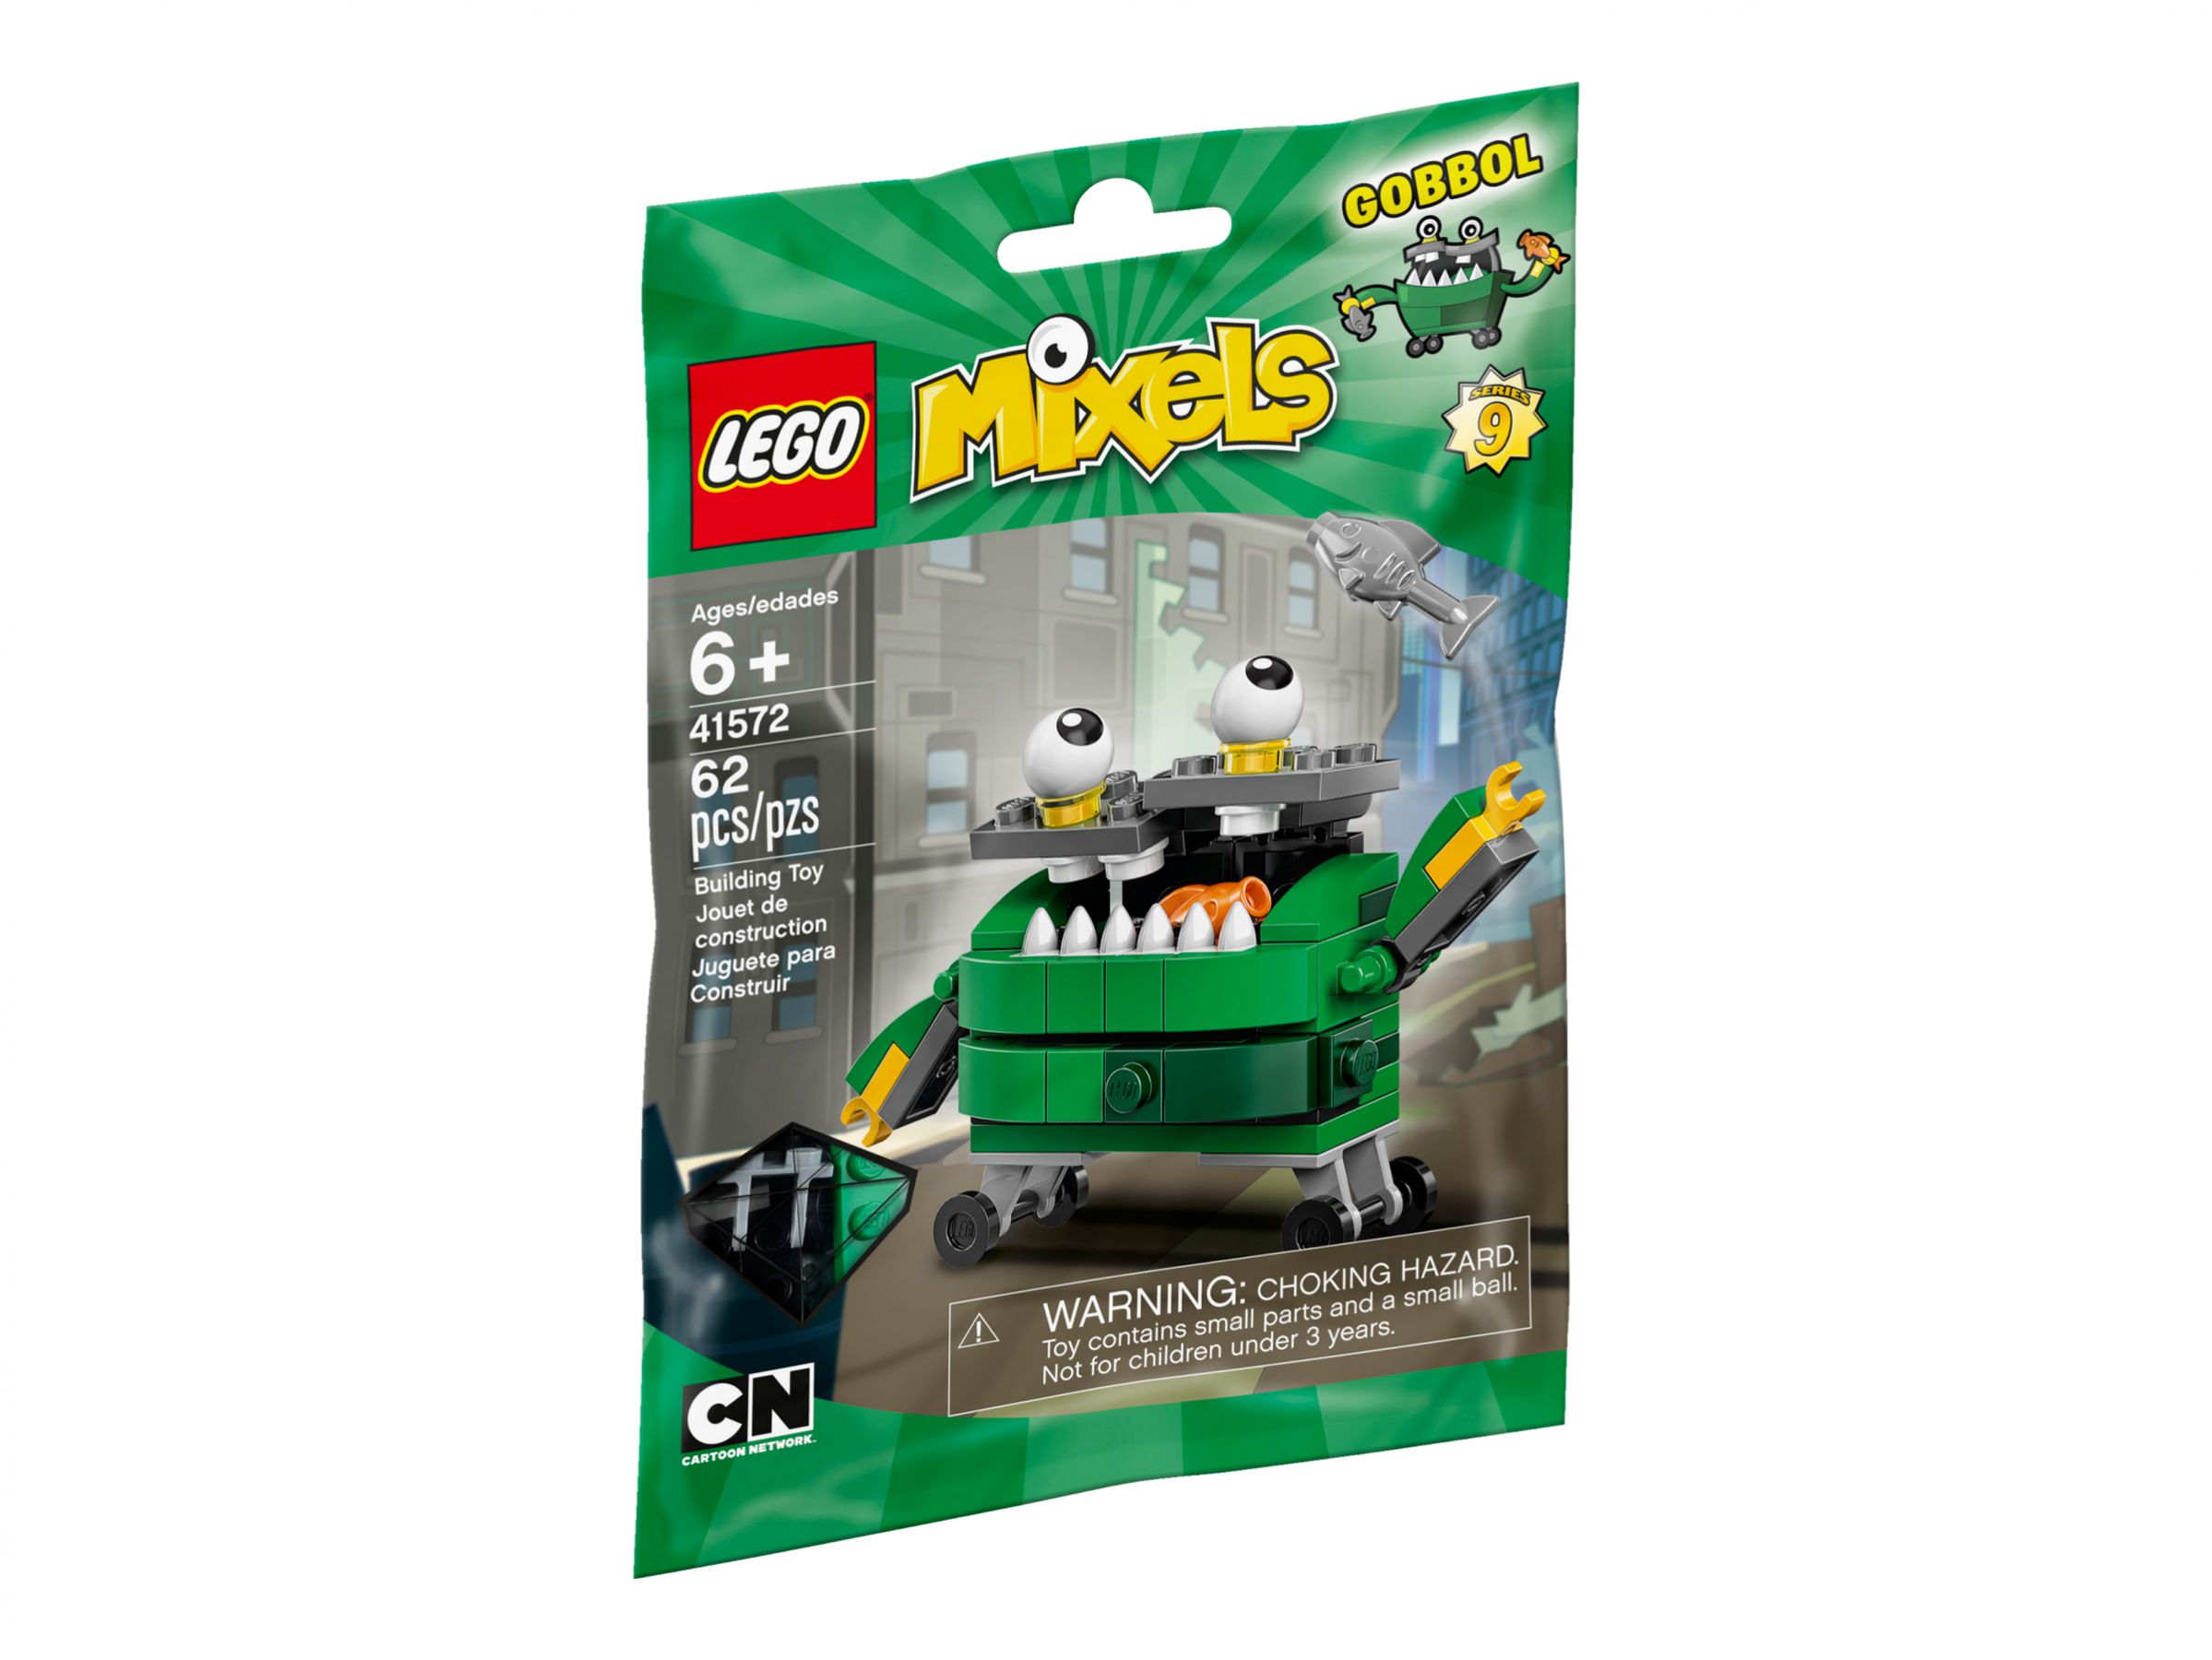 LEGO Mixels 41572 Gobbol LEGO_41572_alt1.jpg